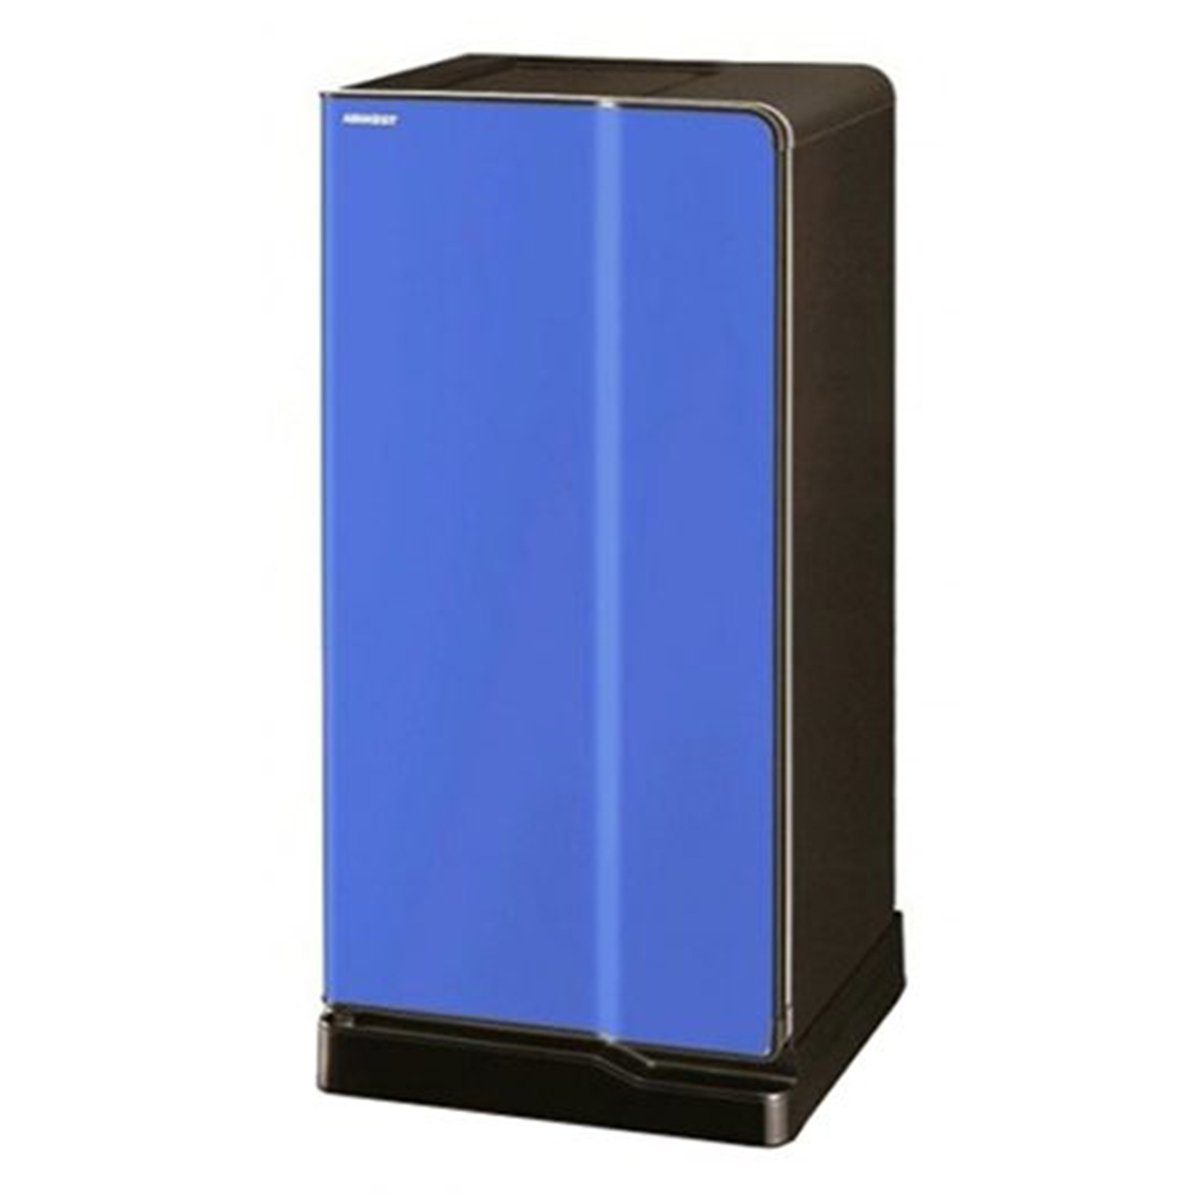 Toshiba Single Door Refrigerator GRE1837BBK 180Ltr